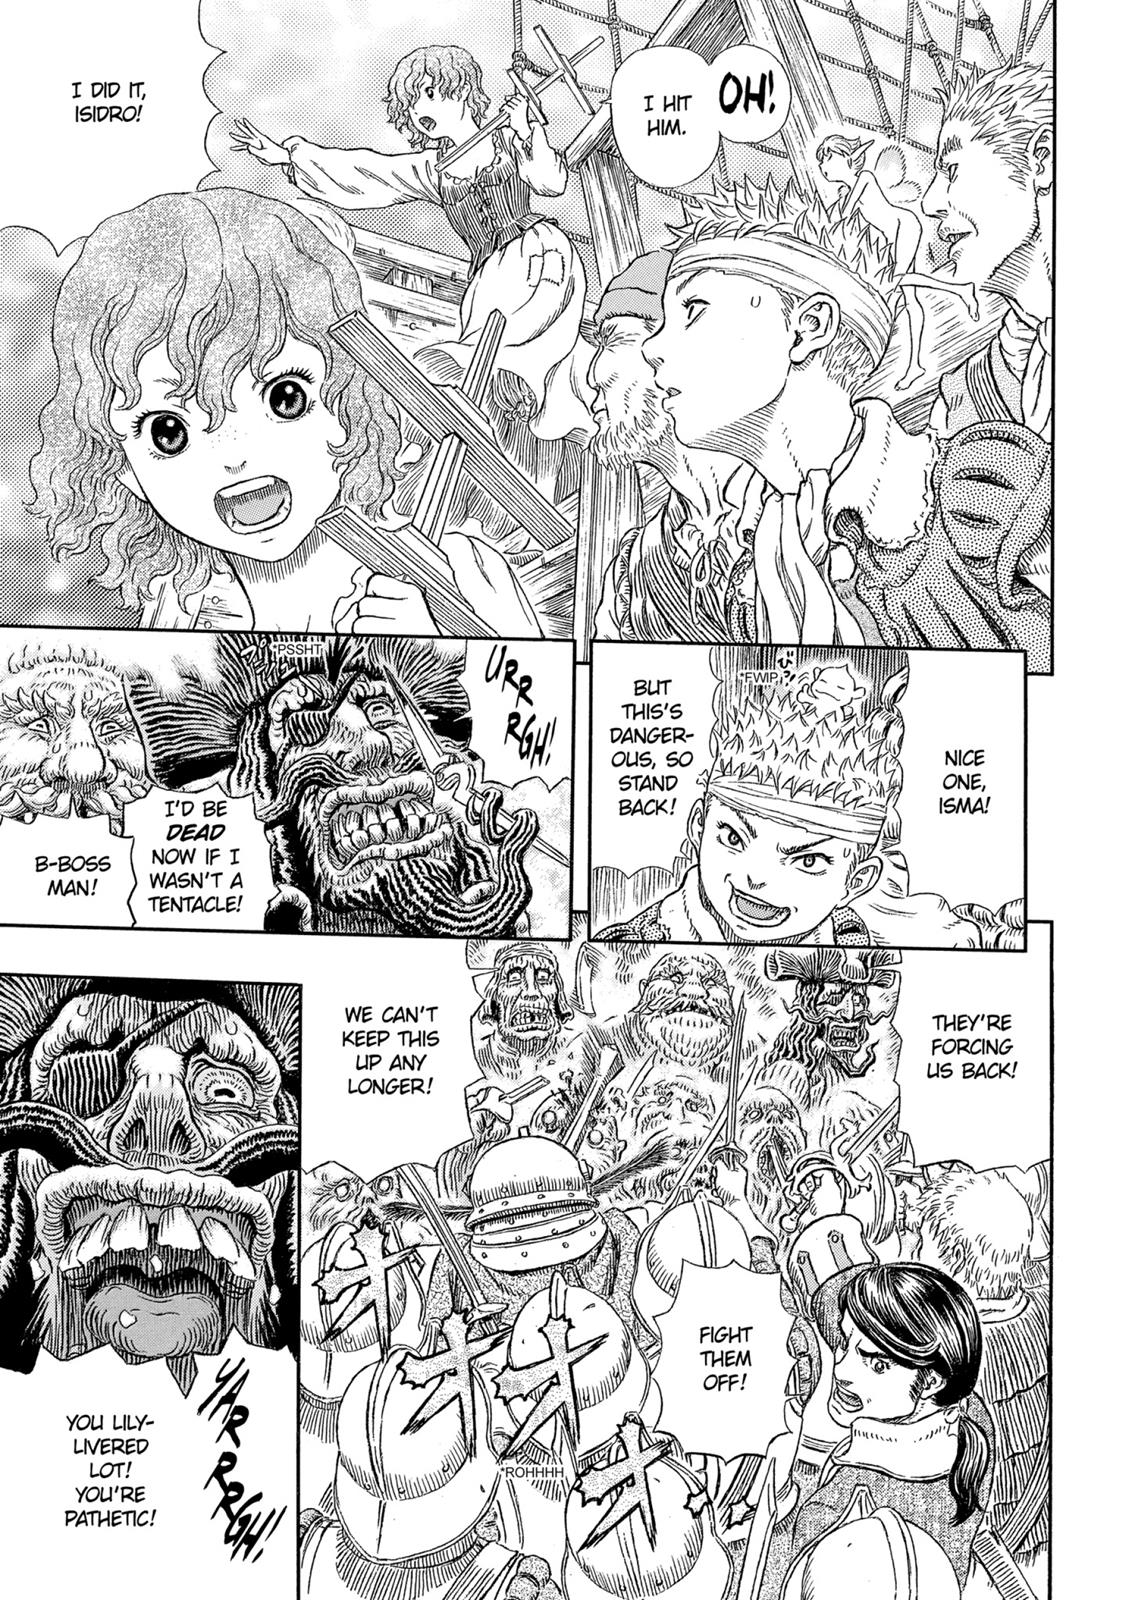 Berserk Manga Chapter 322 image 06